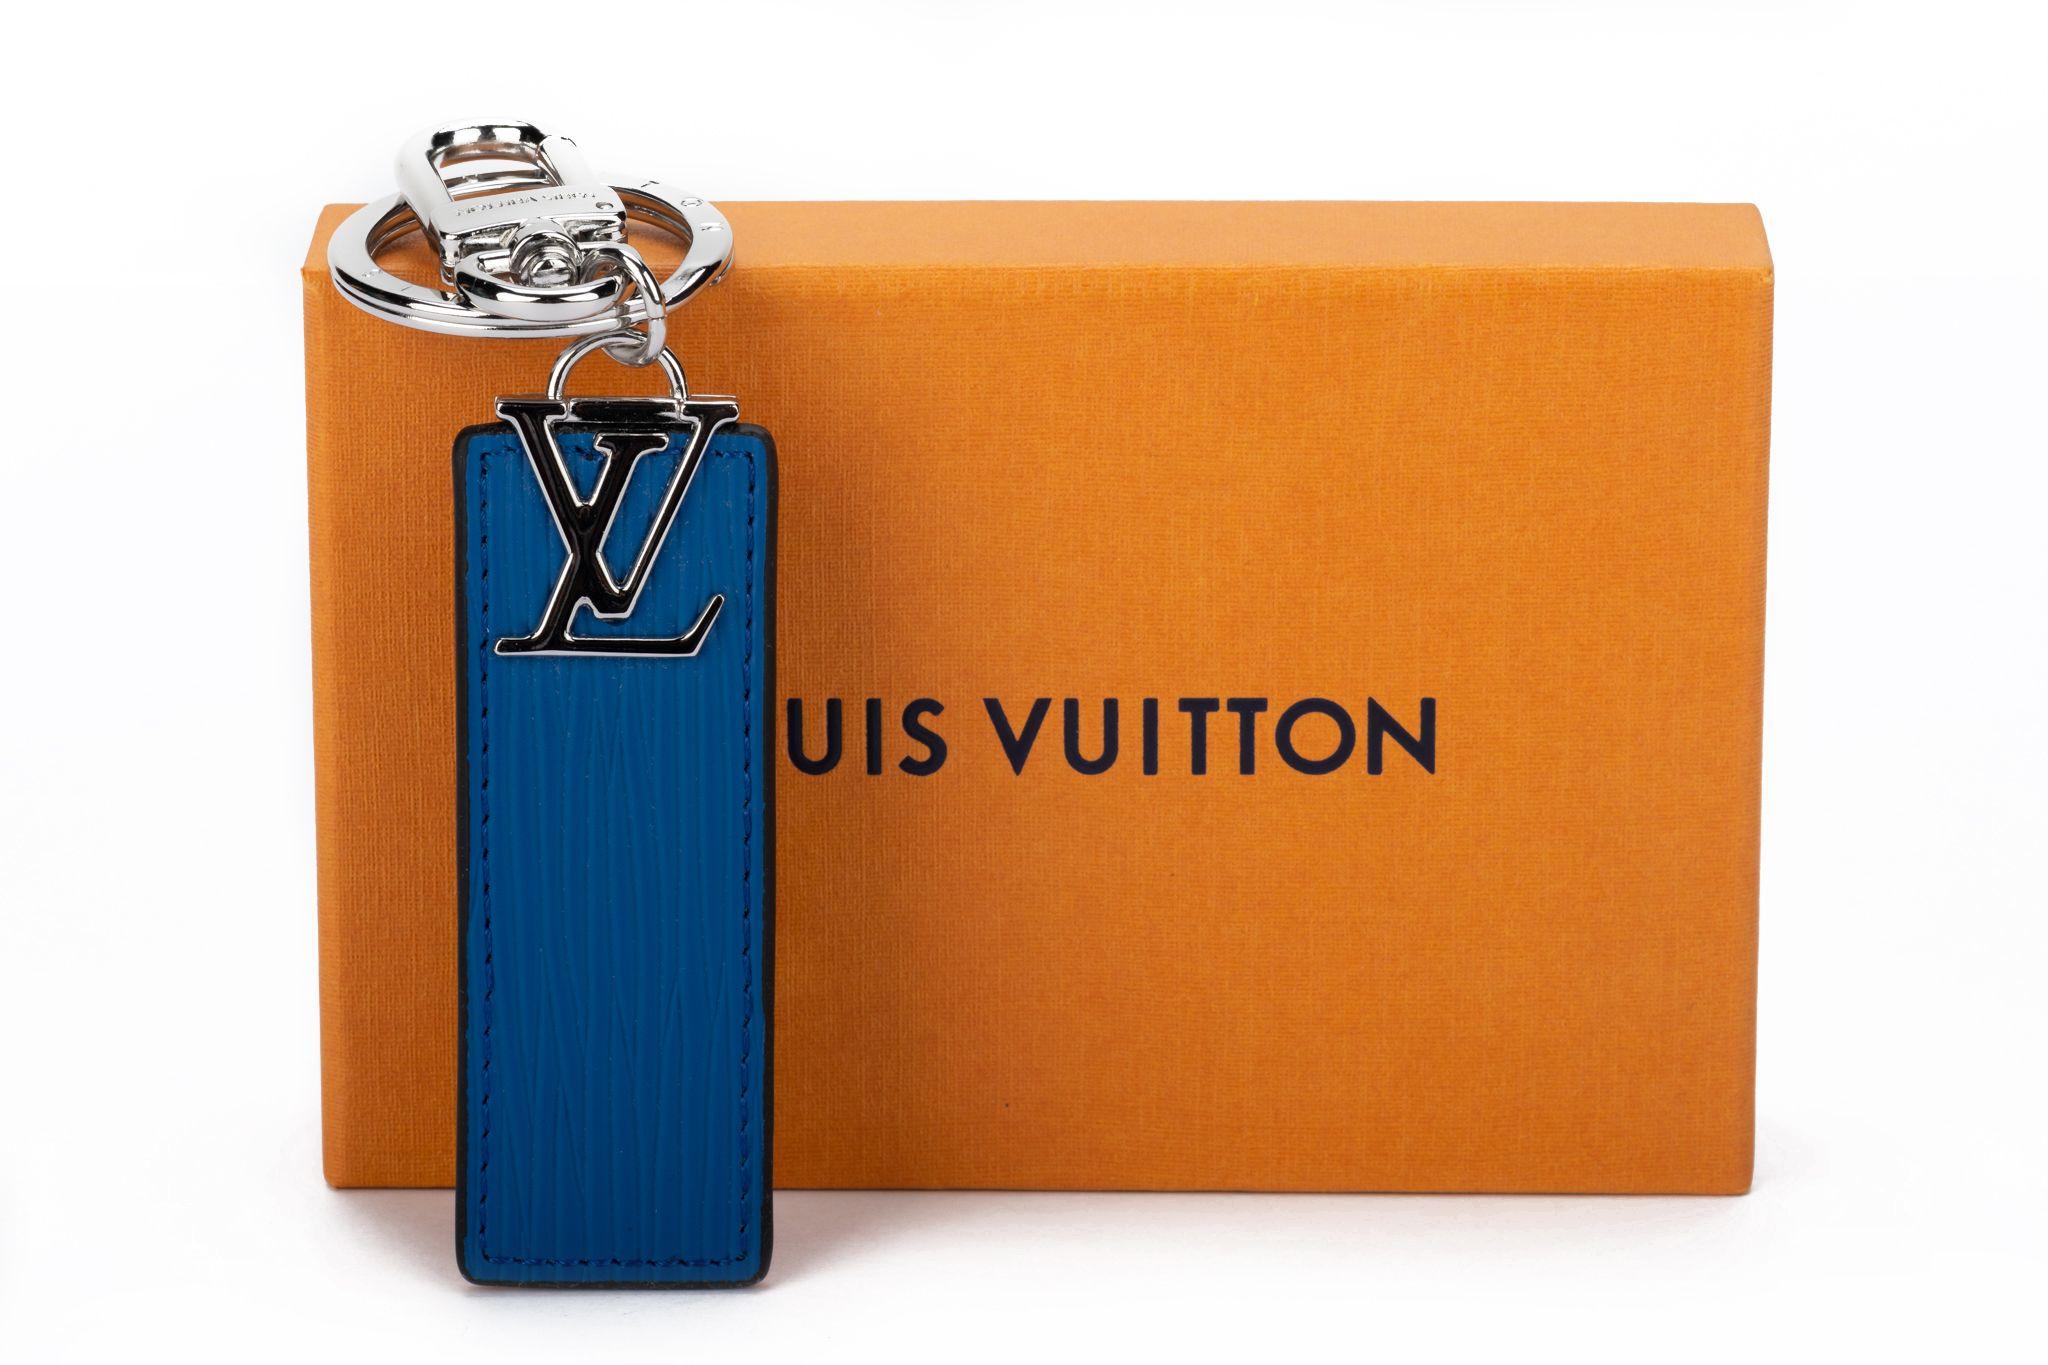 Louis Vuitton reversible blau / schwarz Schlüsselanhänger oder Tasche Charme mit Silber-Ton-Hardware. Ausgezeichneter Zustand mit Originalverpackung und Schutzumschlag.